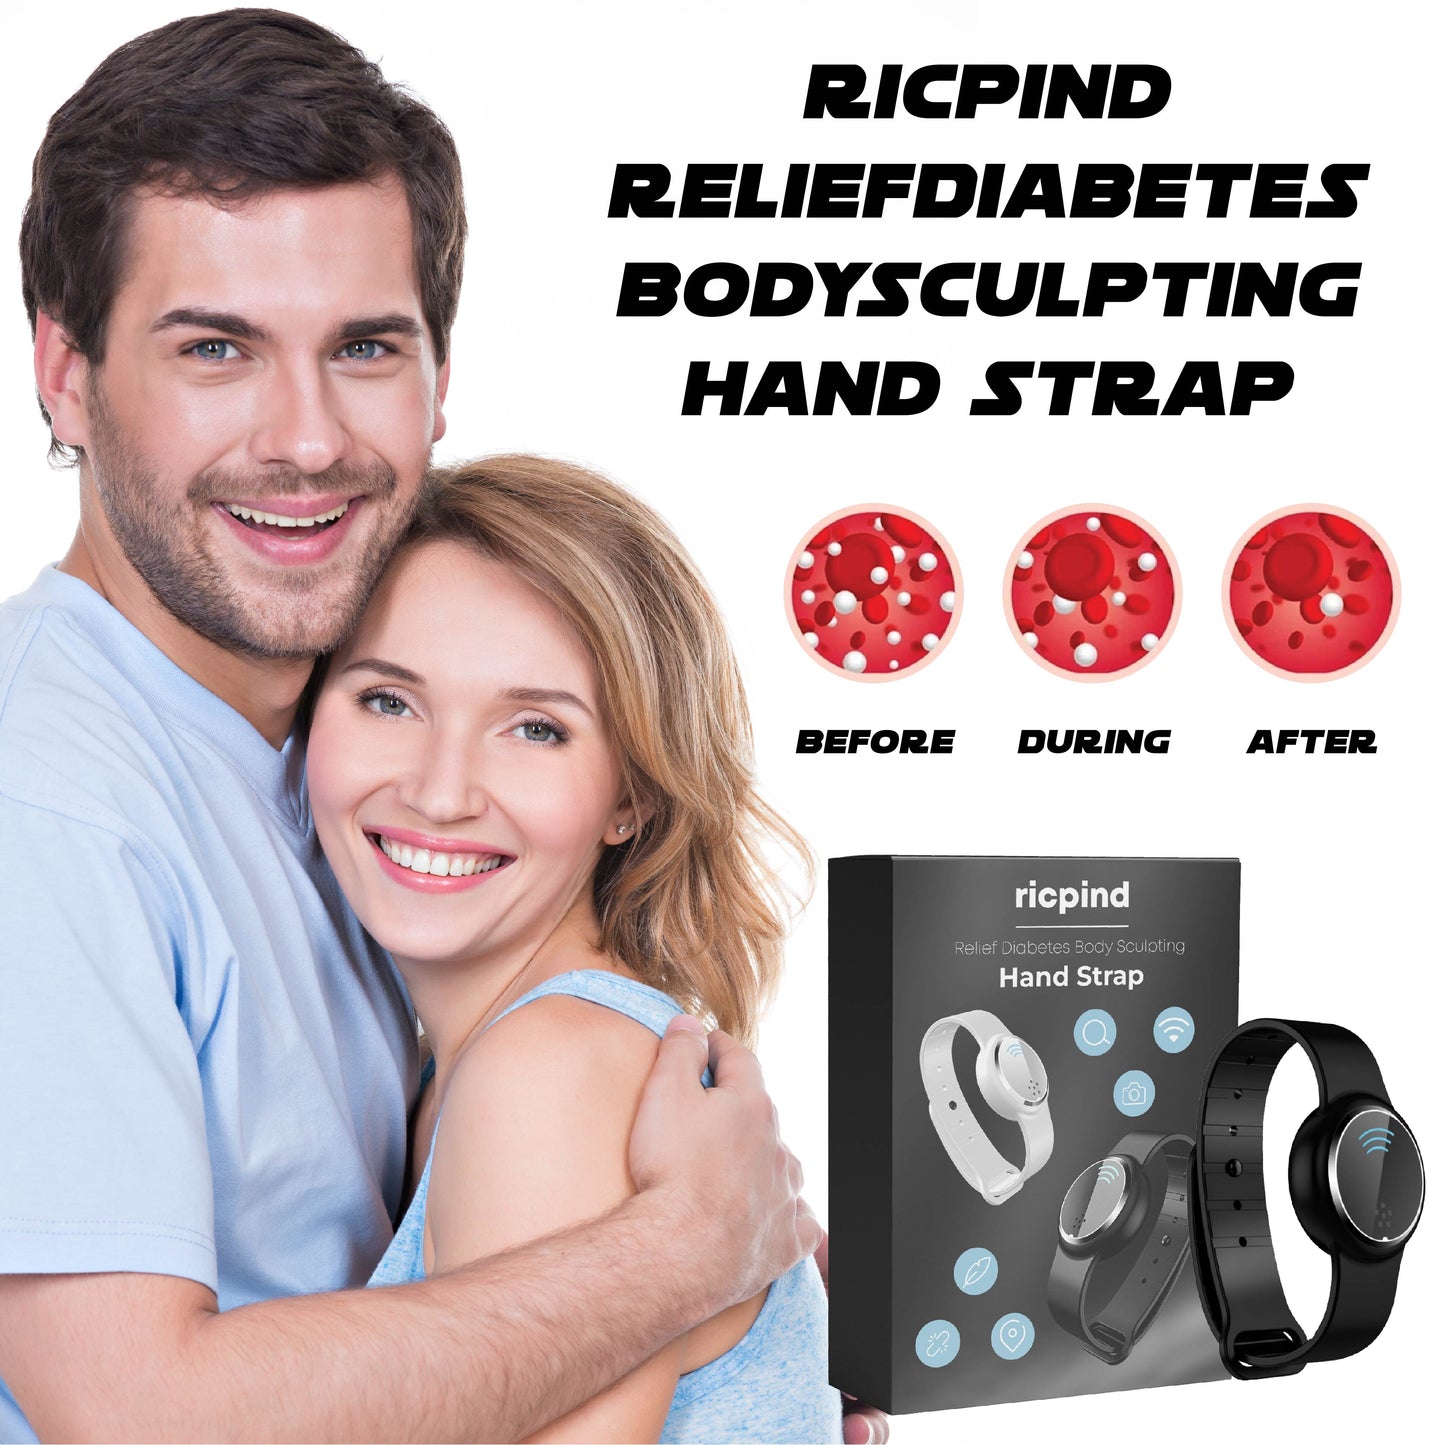 Ricpind ReliefDiabetes BodySculpting Hand Strap